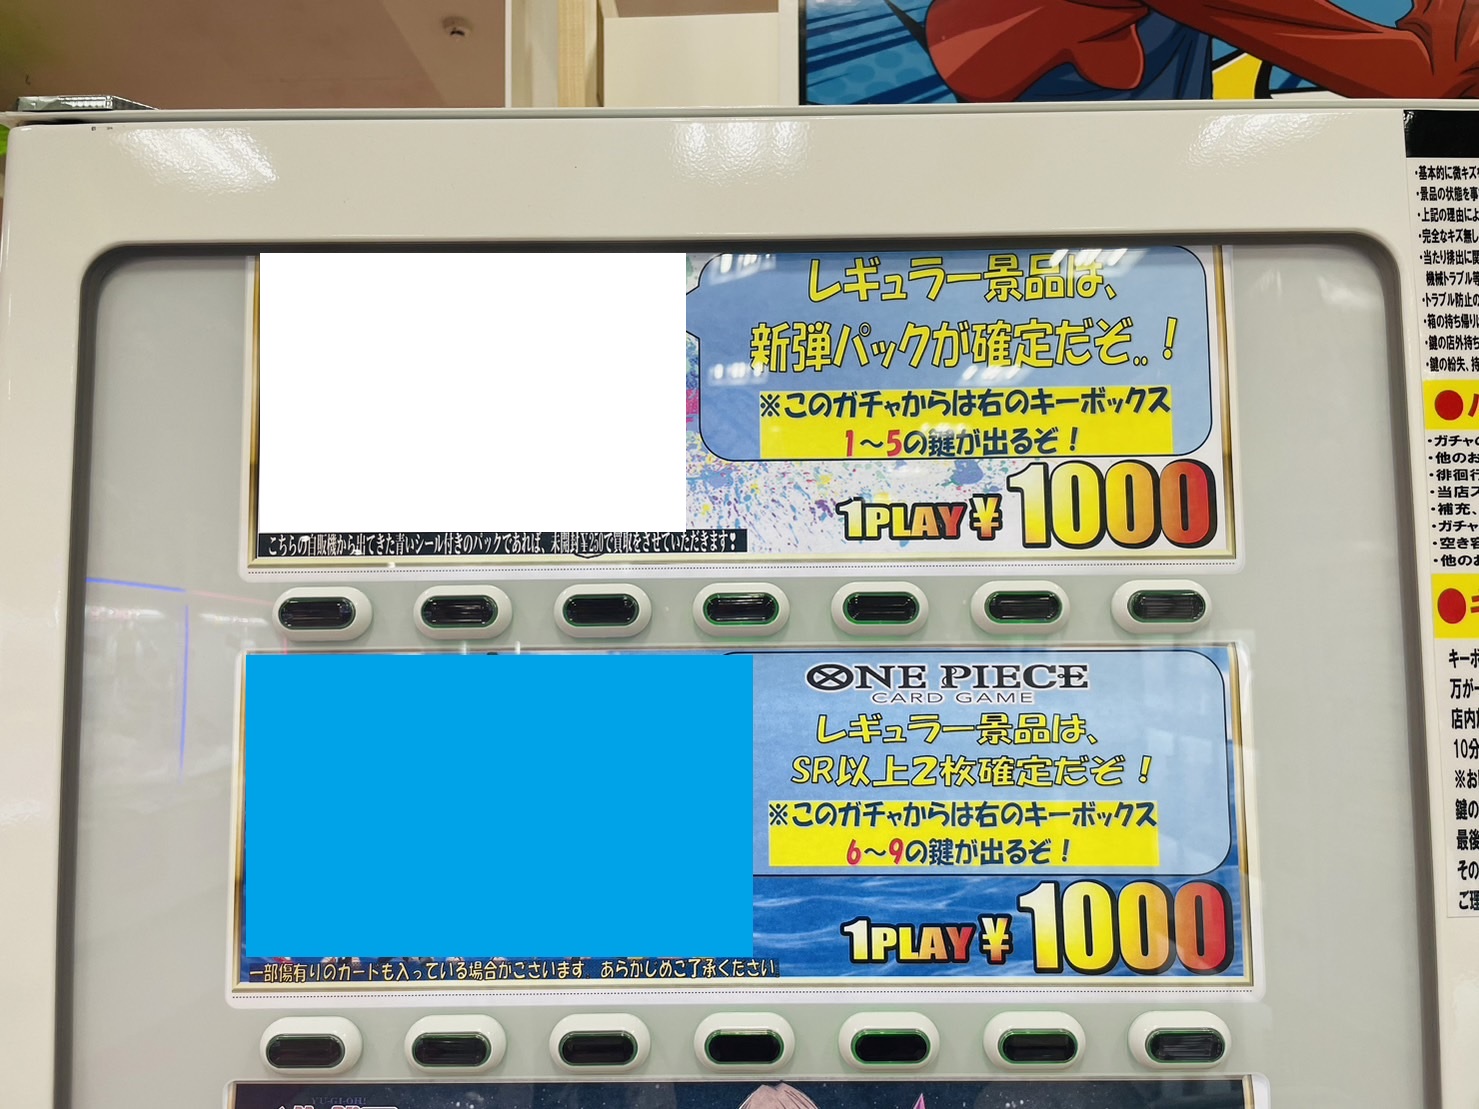 ワンピースカードゲーム SR以上2枚確定 ¥1,000キーボックスガチャ稼働